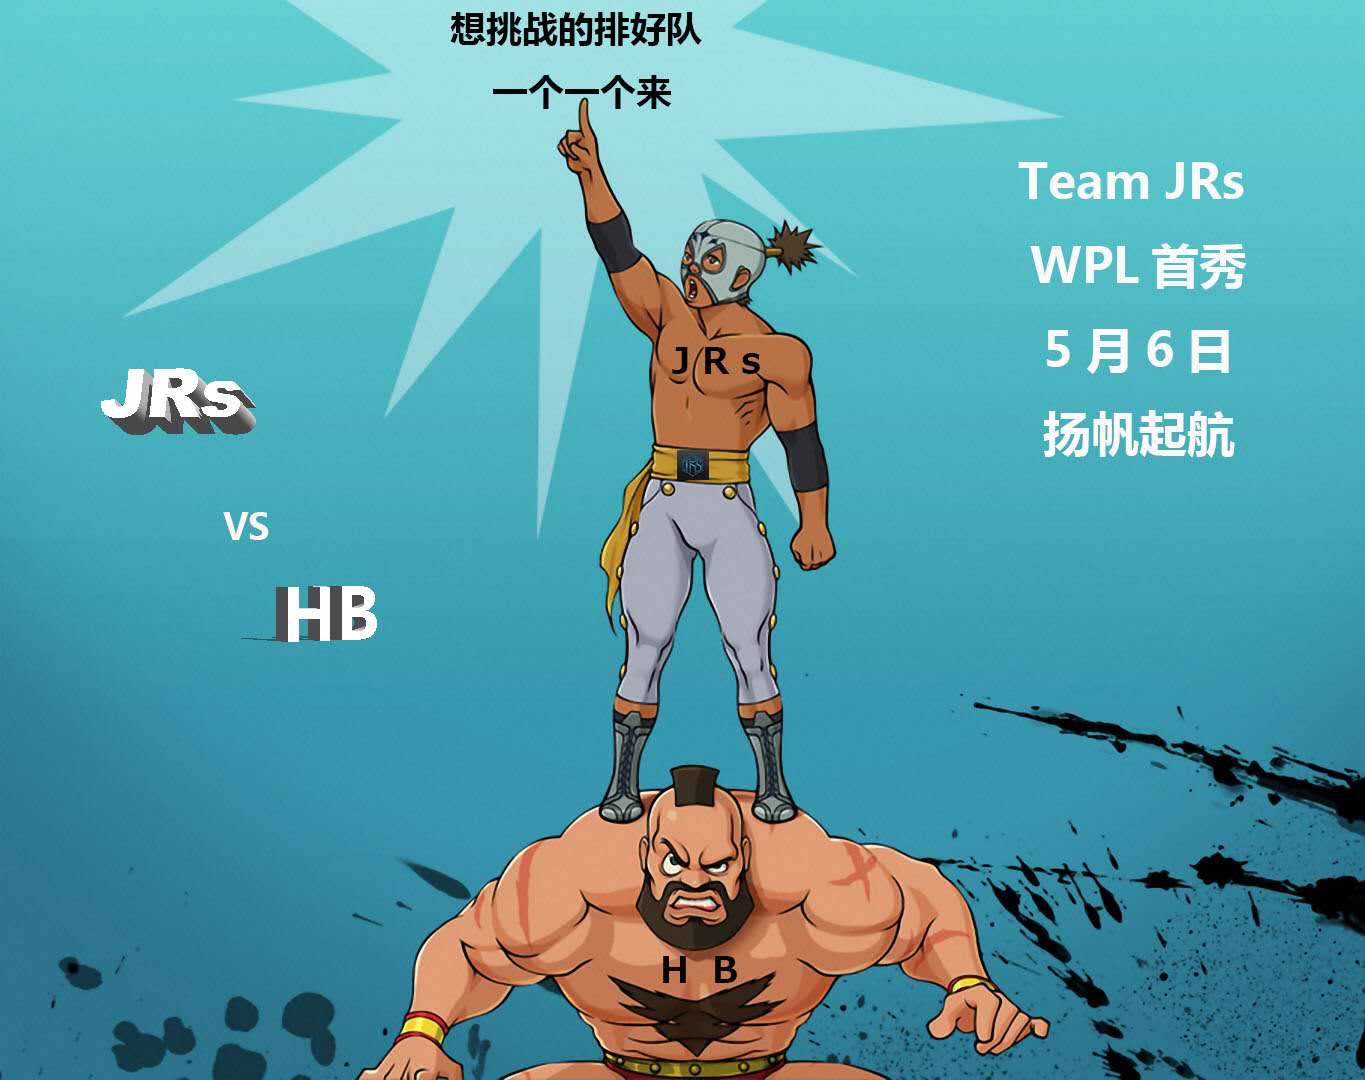 【WPL】 5月6日，JRs vs HB